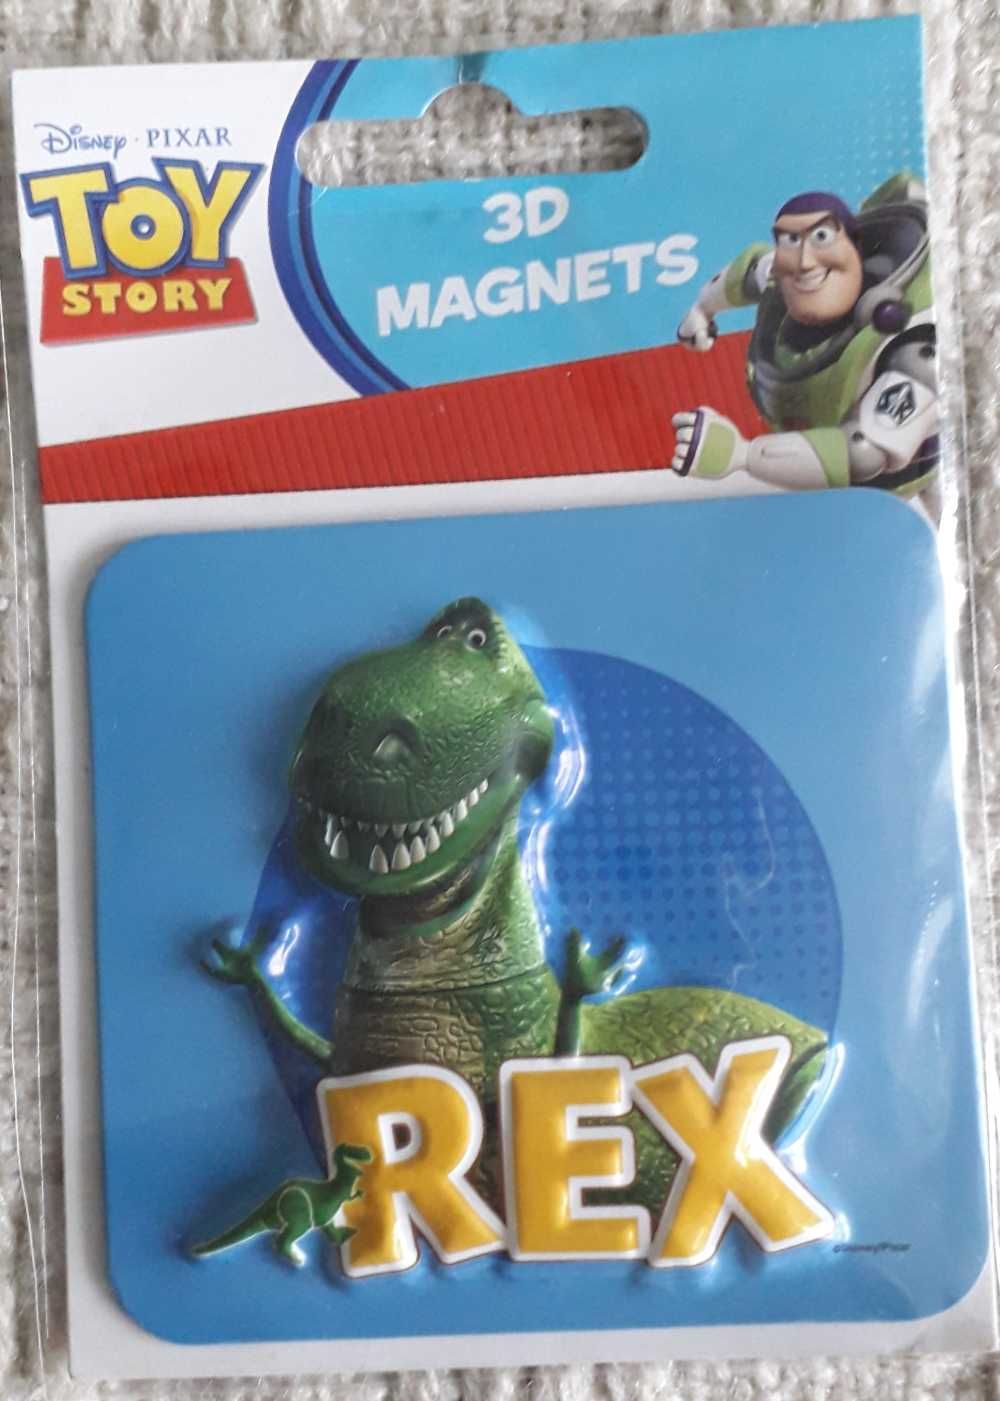 Dinozaury, różnorodne zabawki dotyczące dinozaurów.